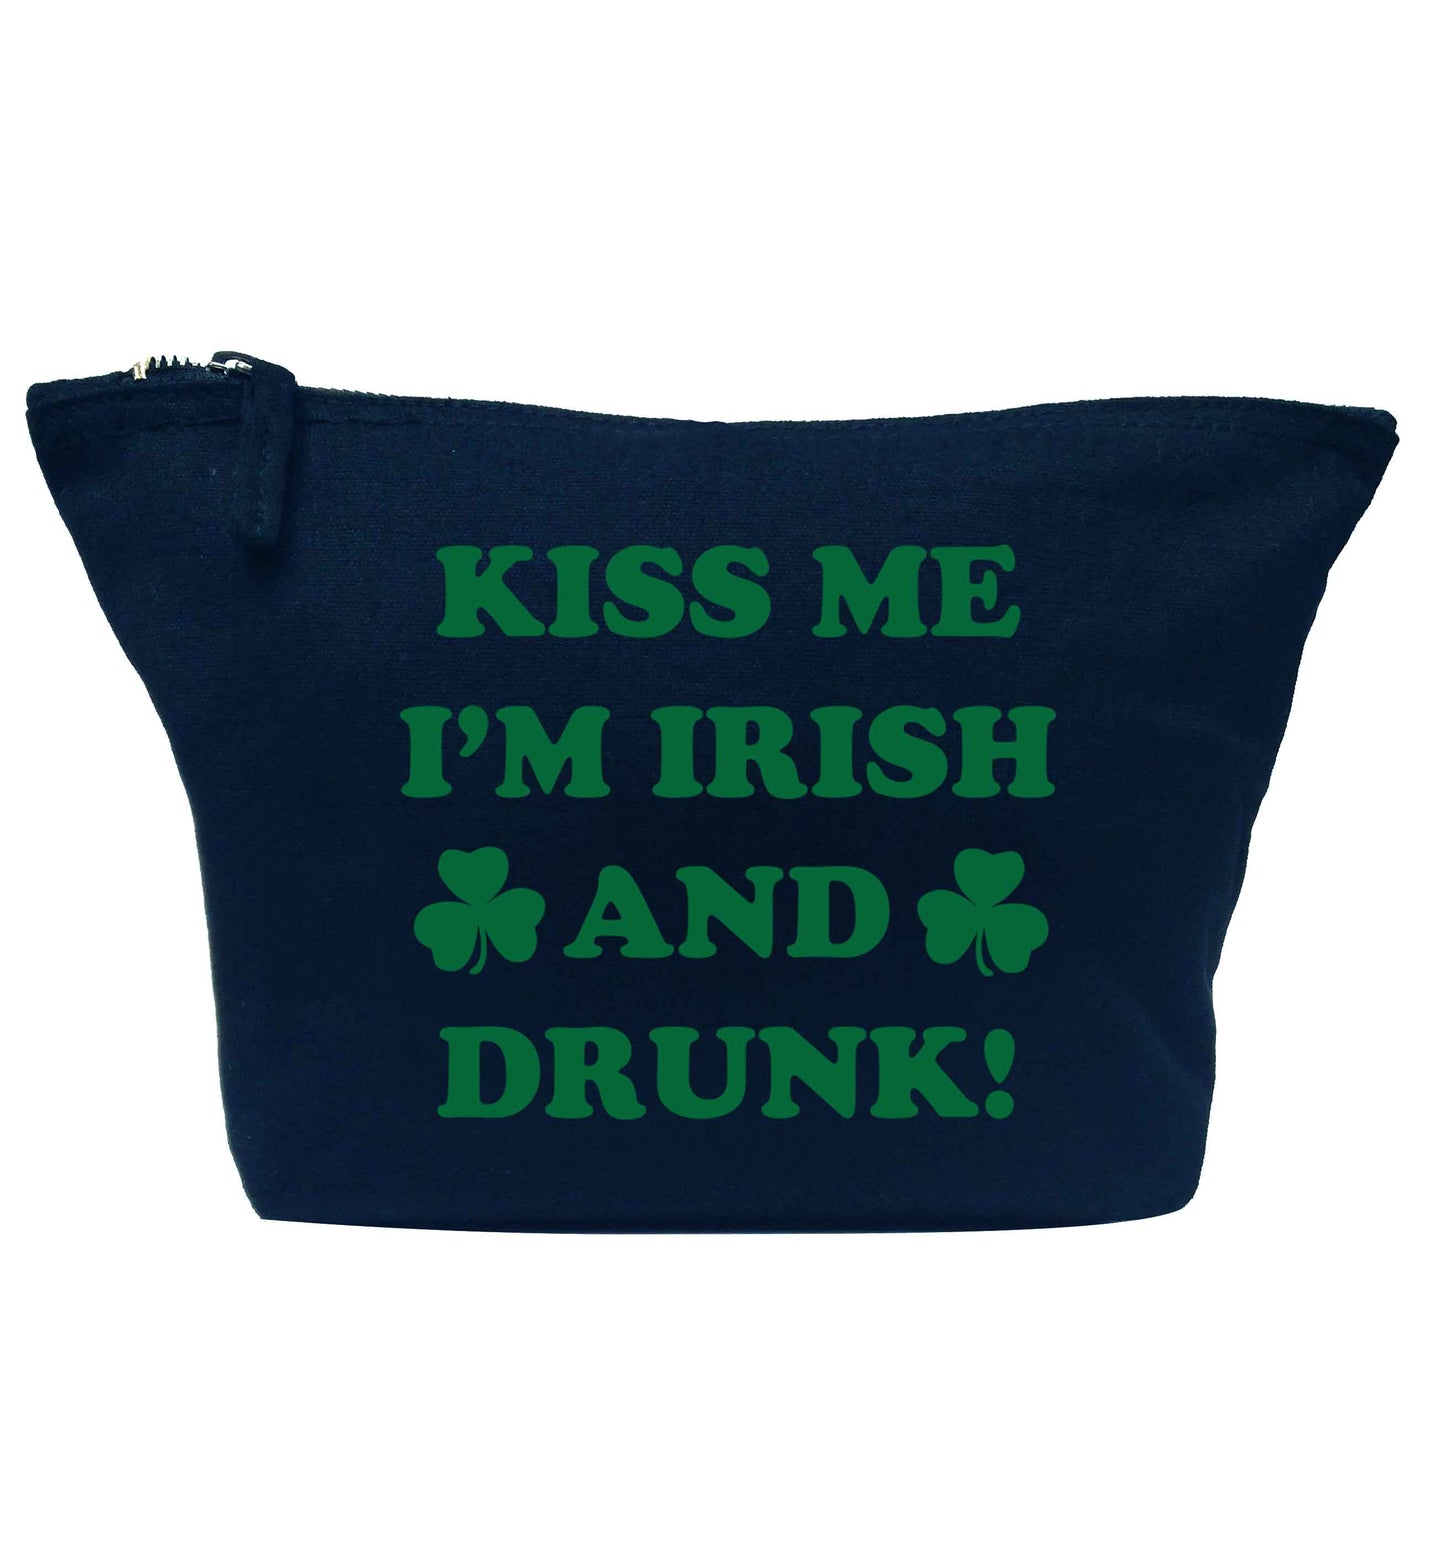 Kiss me I'm Irish and drunk navy makeup bag